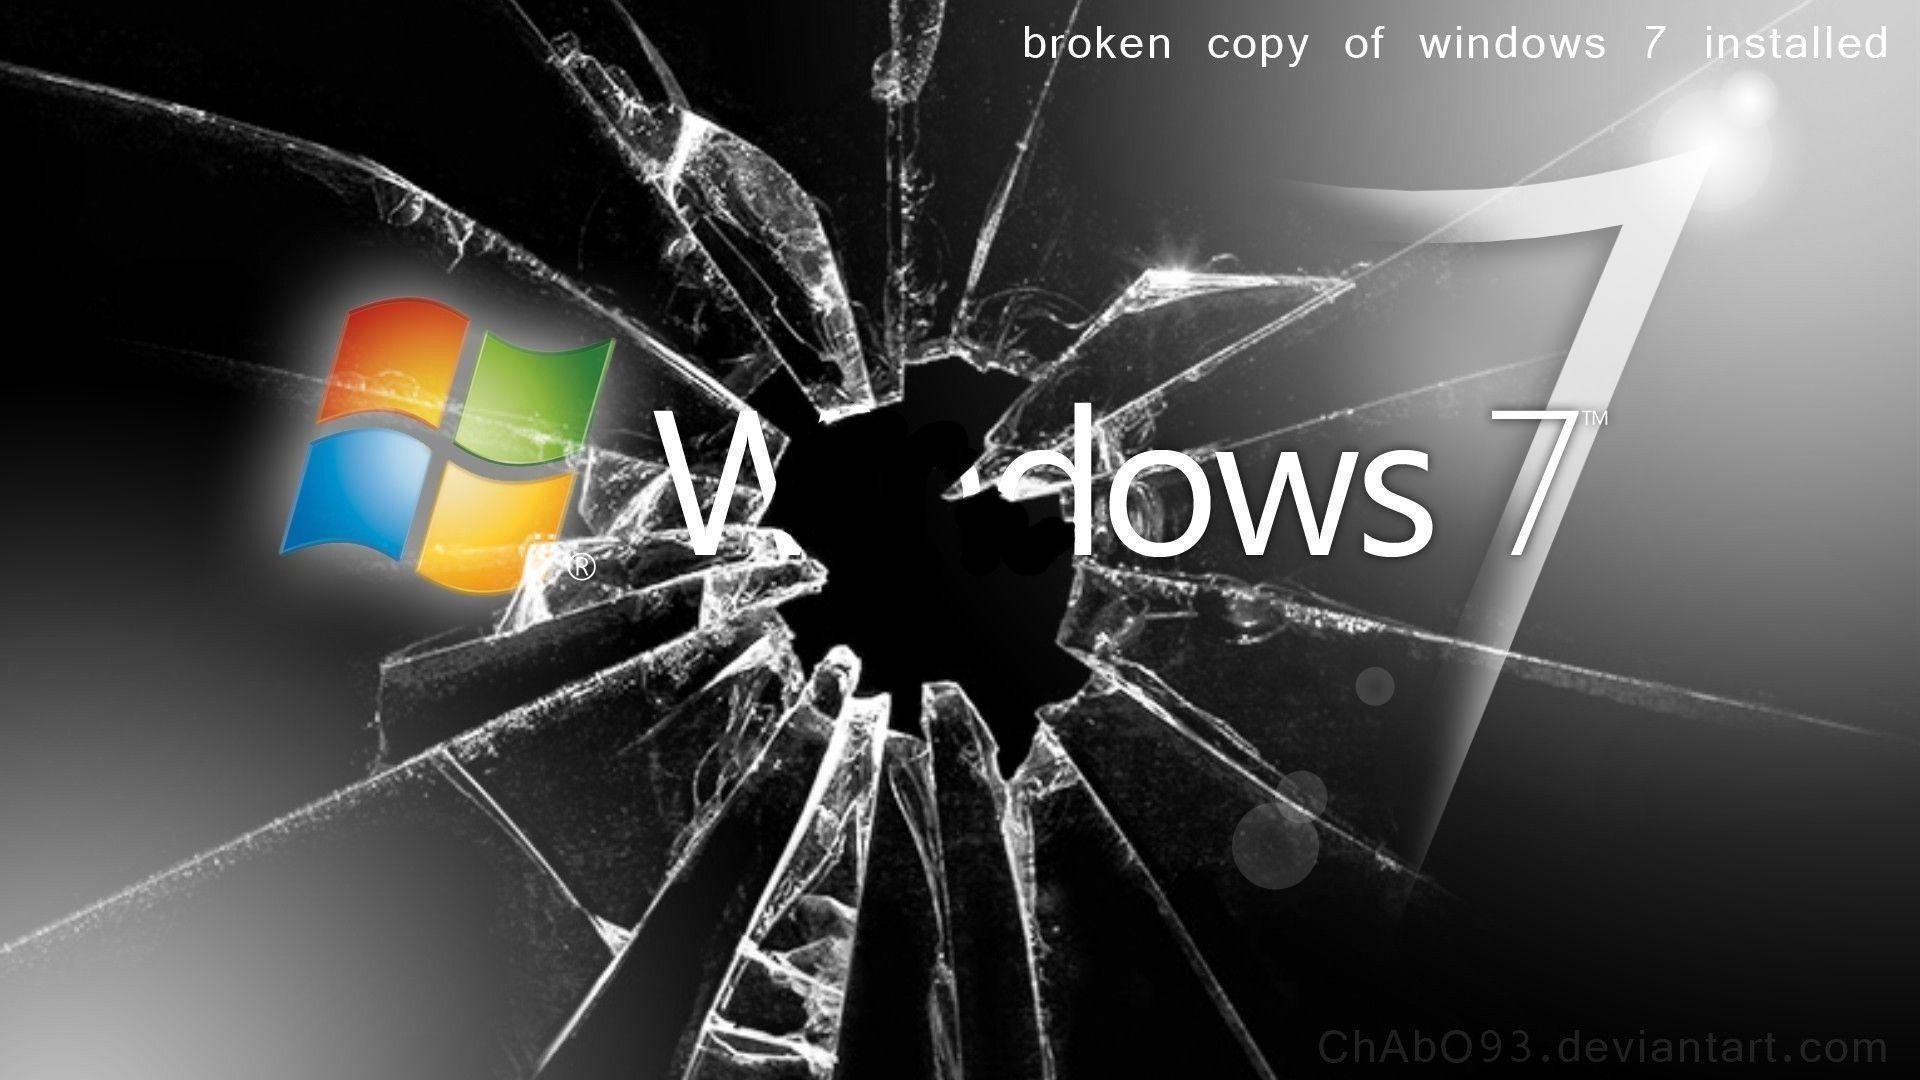 Экран виндовс 7. Разбитый экран Windows. Разбитый экран виндовс 7. Сломанный икран финдоус. Разбитый монитор виндовс.